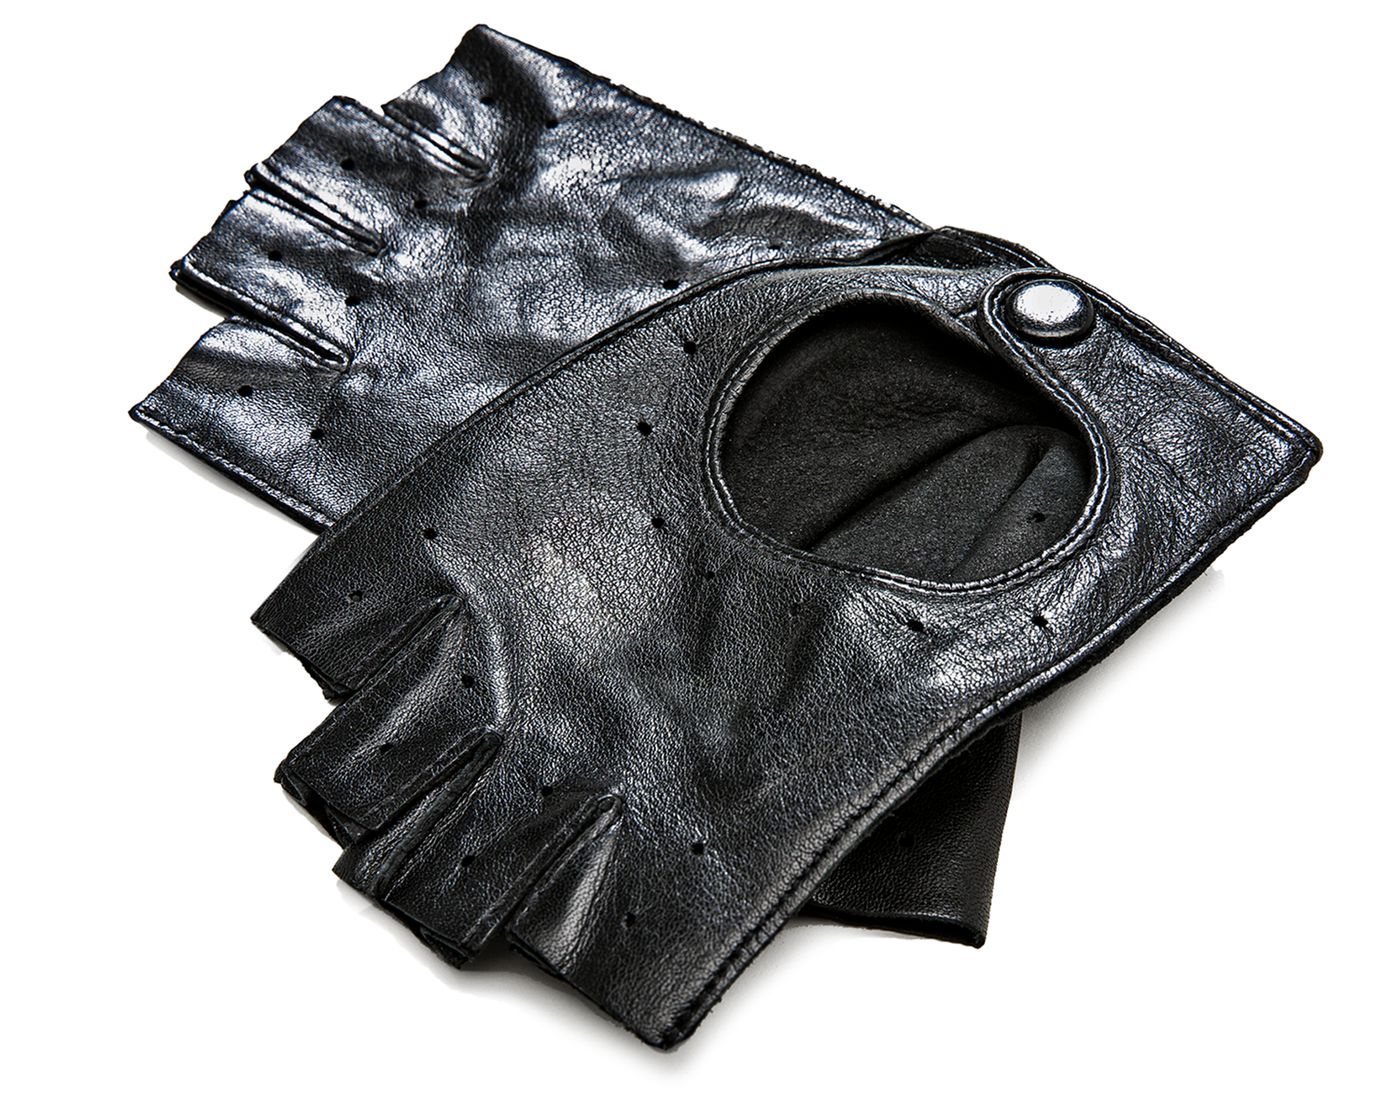 Halb-Handschuhe
Fingerless gloves
Gants mitaines
Rękawiczki bez